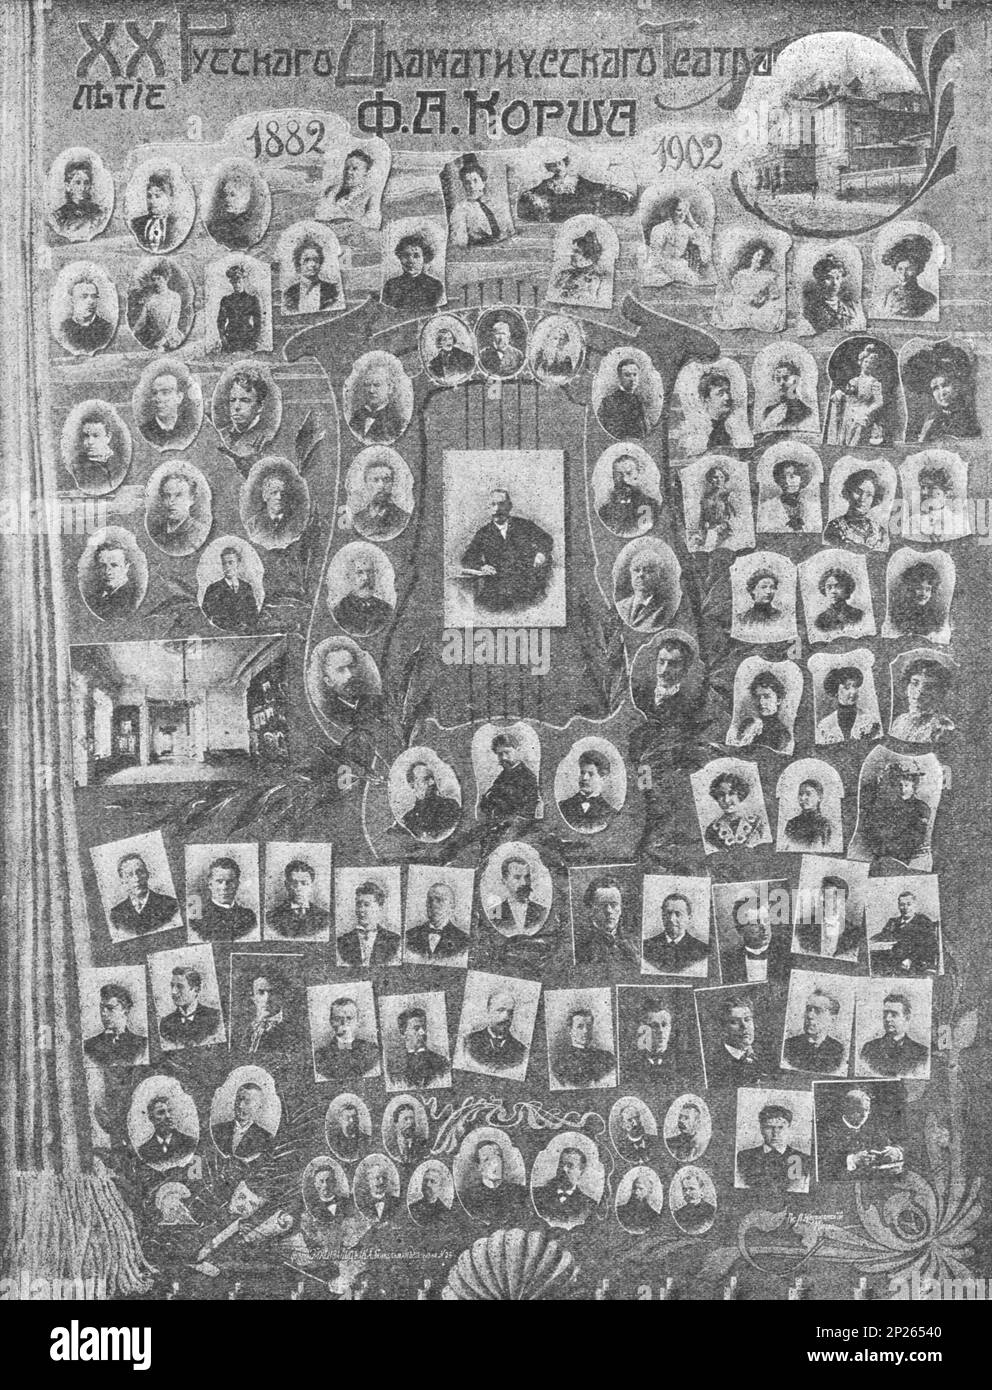 Poster per il 20th° anniversario del Teatro russo del dramma Korsh (il Teatro russo del dramma F. A. Korsh). Il gruppo teatrale della prima esecuzione nel 1882 e dell'ultima nel 1902. Foto Stock